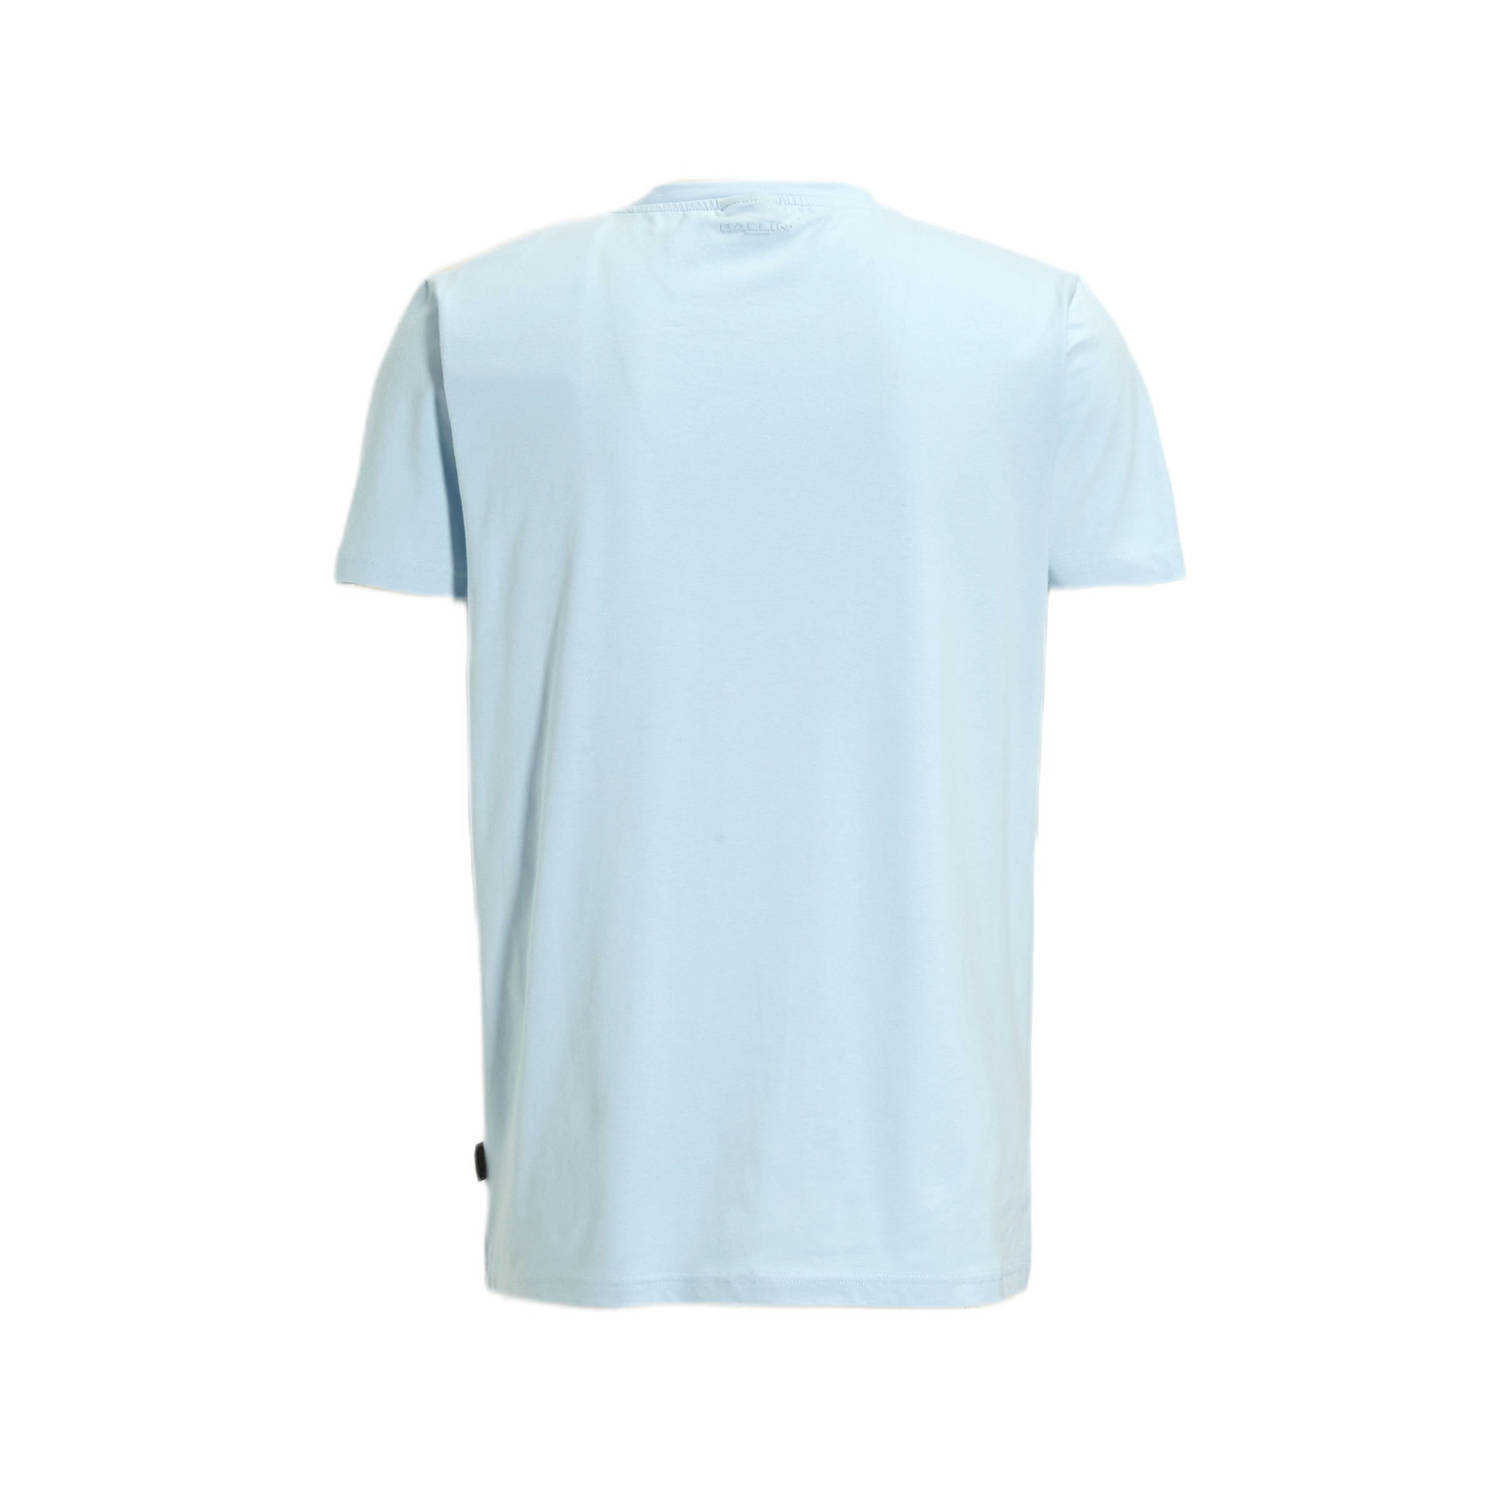 Ballin T-shirt met printopdruk lt blue